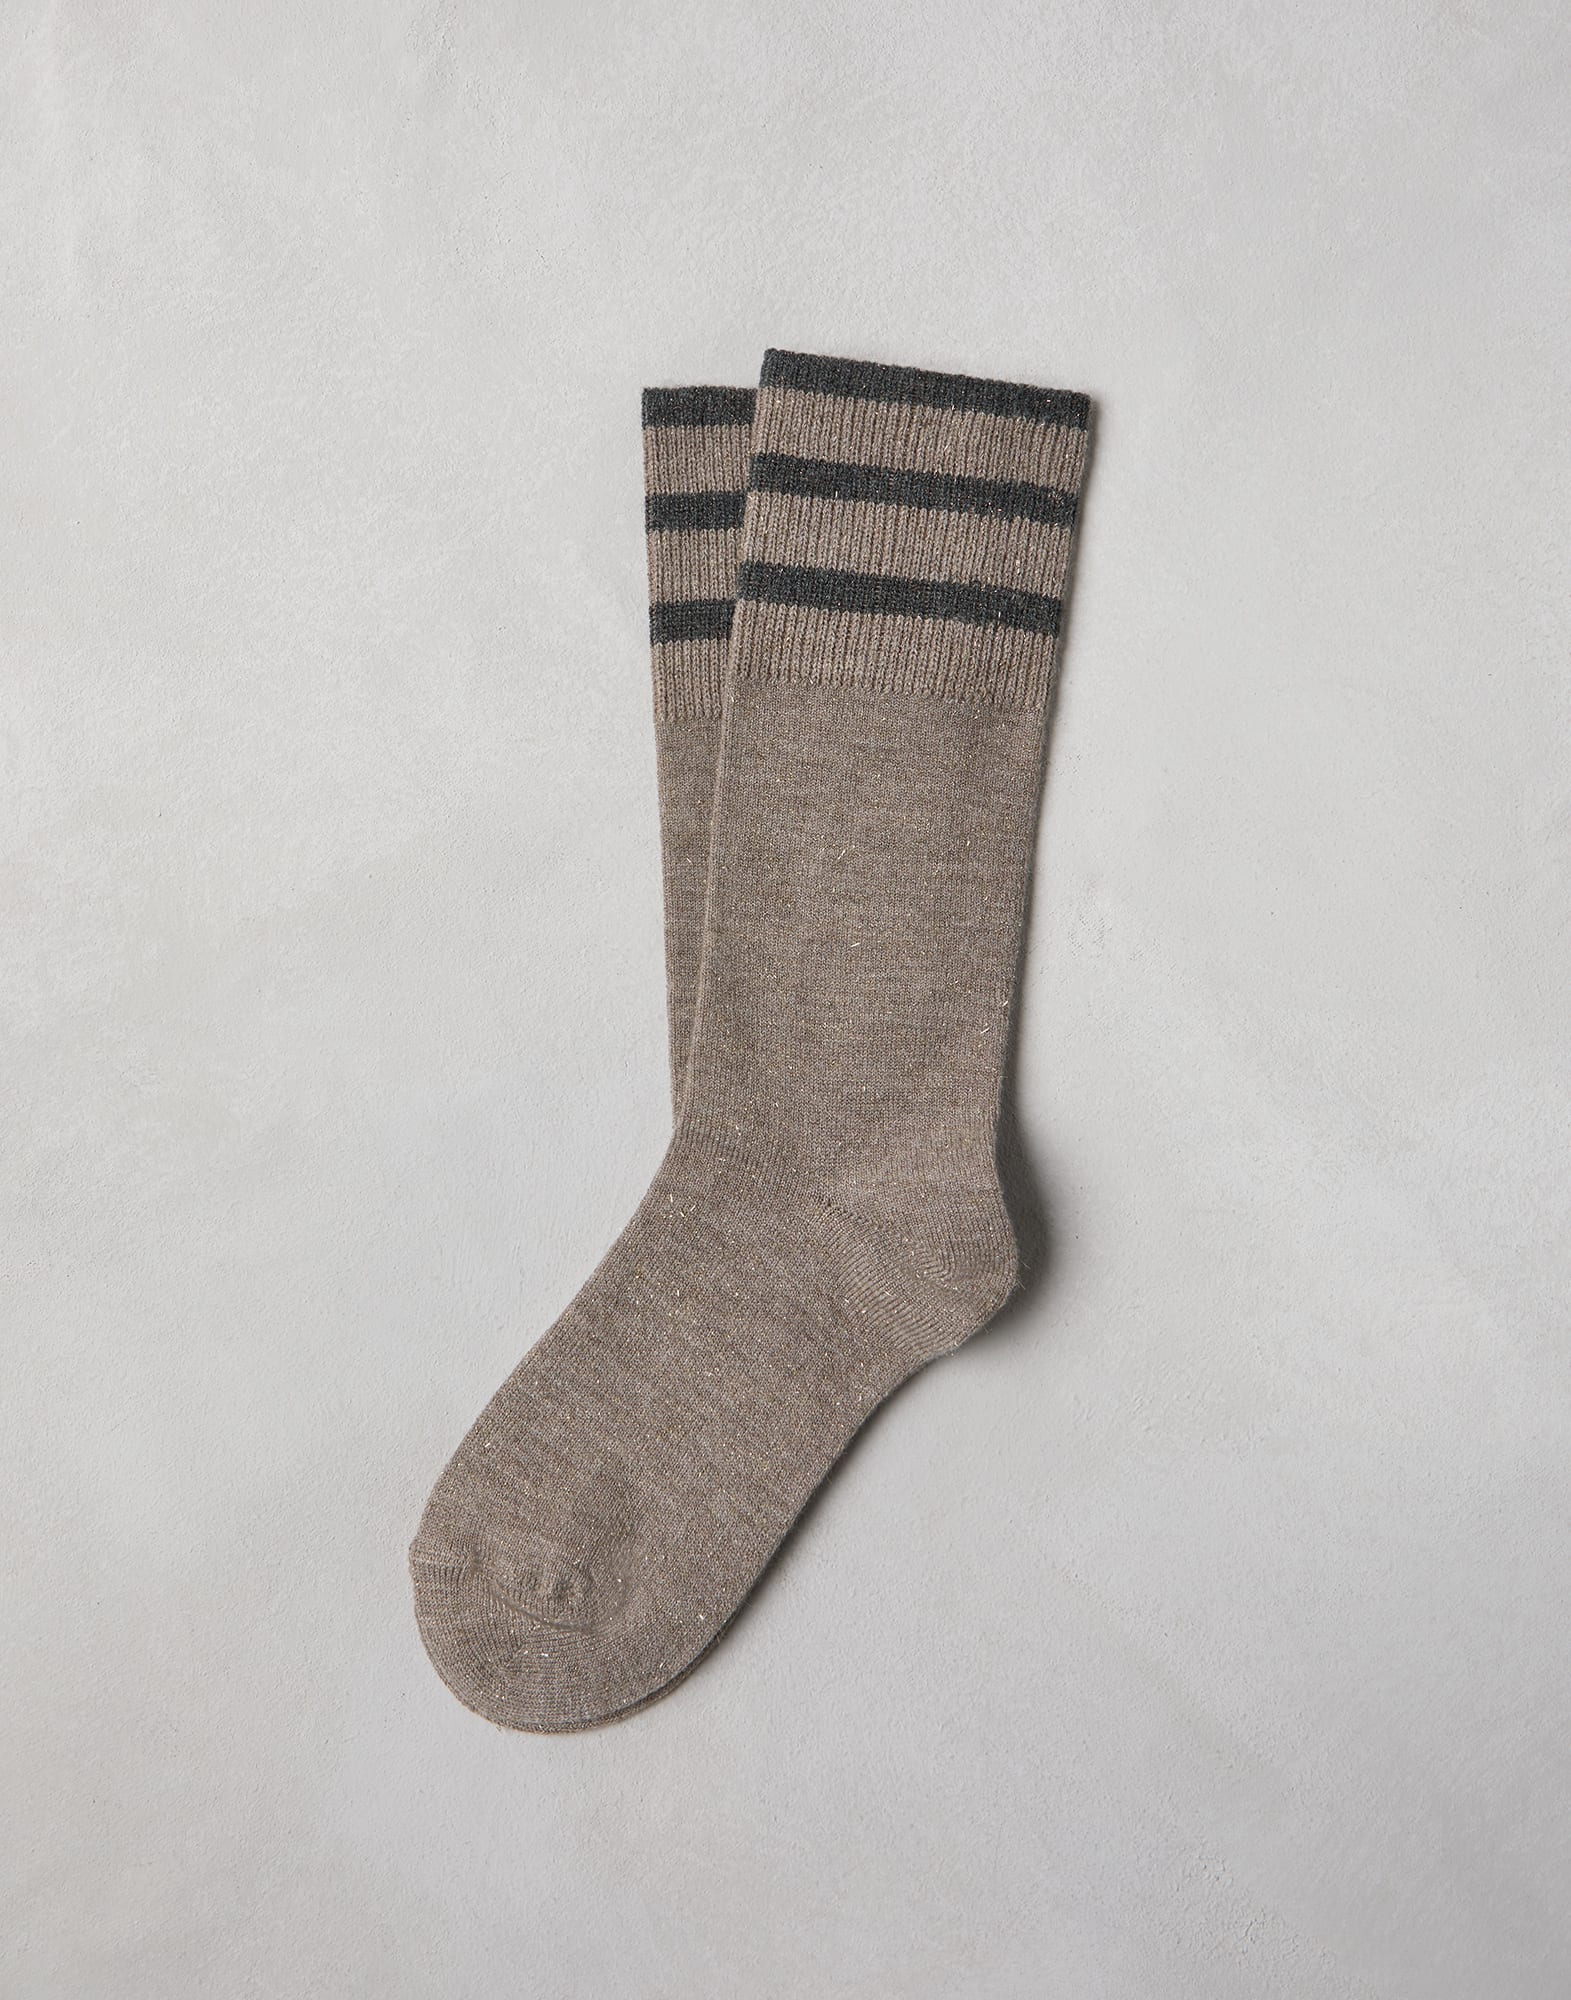 Sparkling knit socks